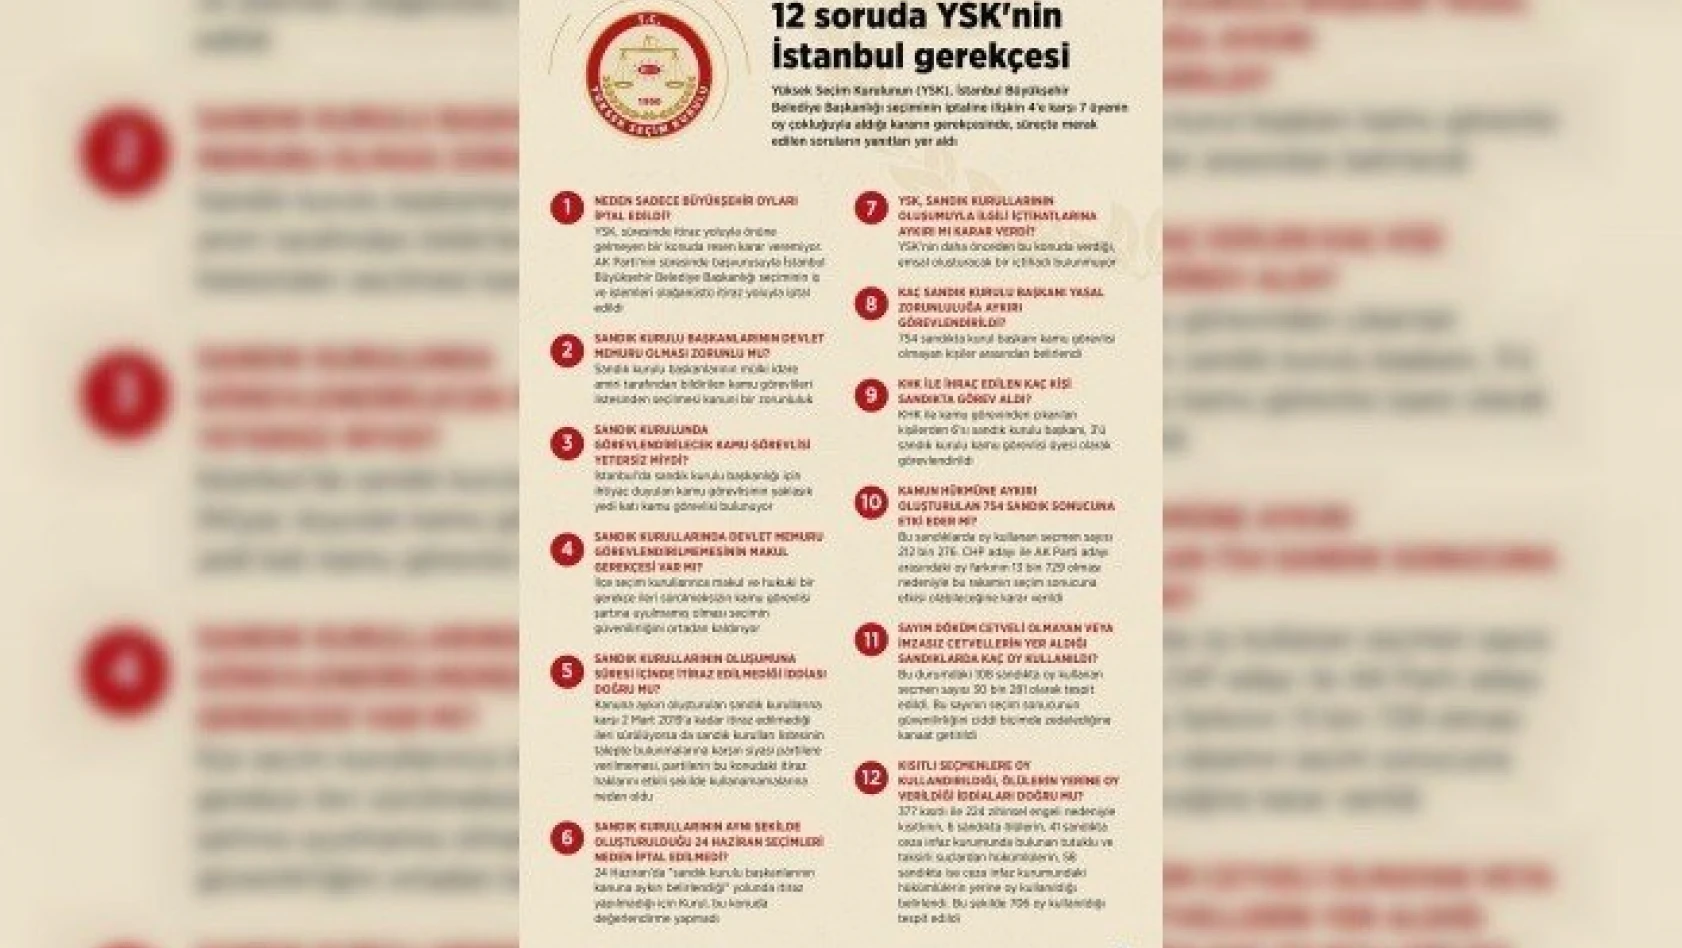 12 soruda YSK'nin İstanbul gerekçesi